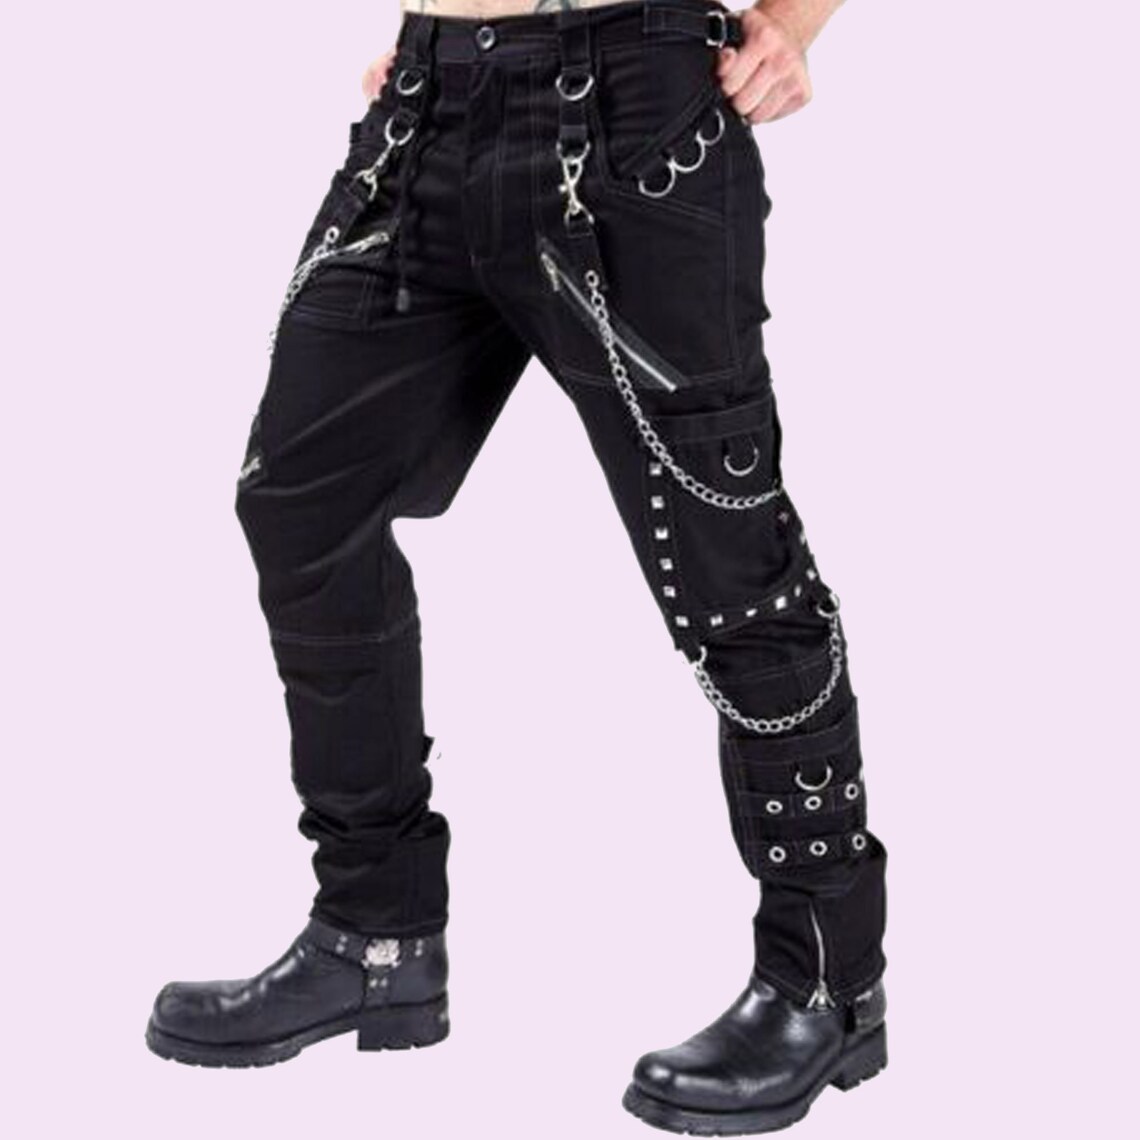 Men's Gothic Black Pant Eyelets Cargo Bondage Trouser Punk | Etsy